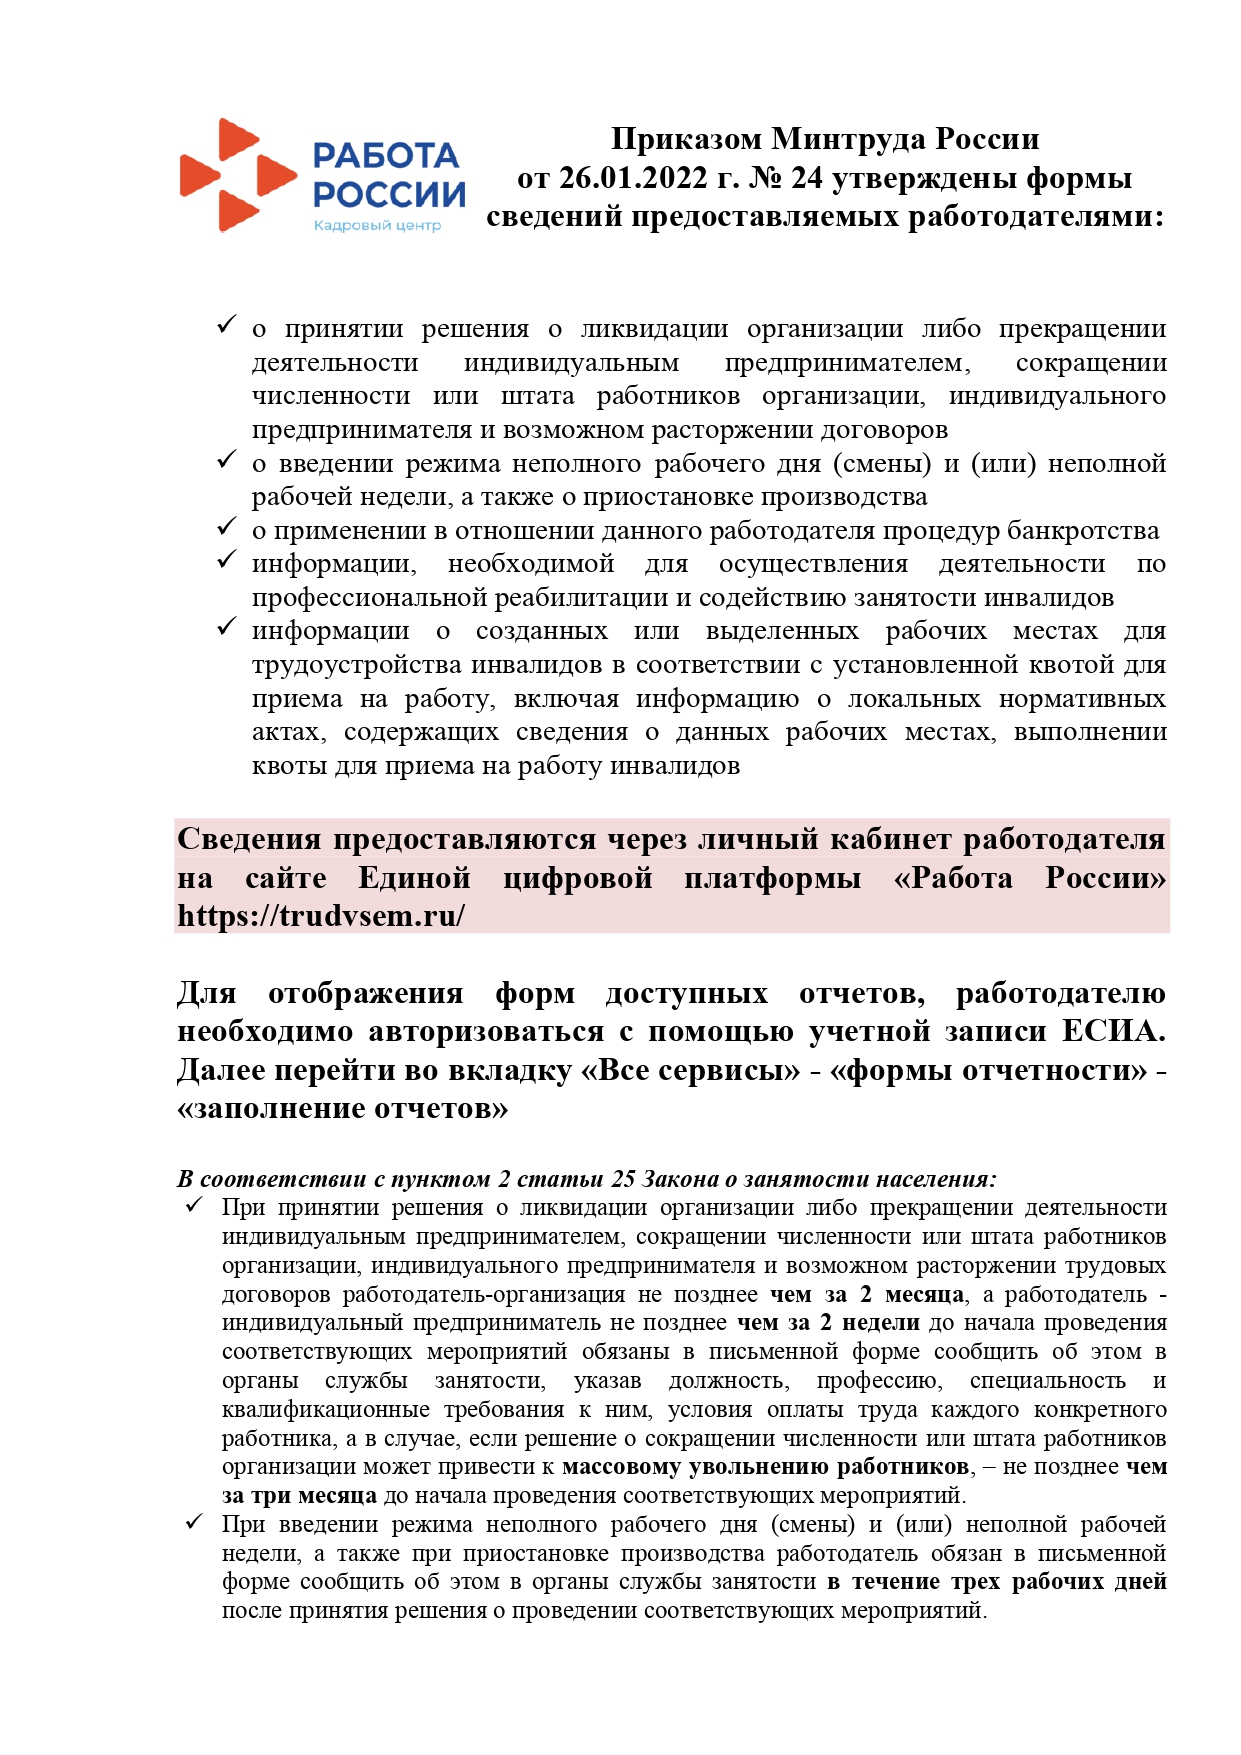 Приказом Минтруда России от 26.01.2022 г. № 24 утверждены формы сведений предоставляемых работодателями.